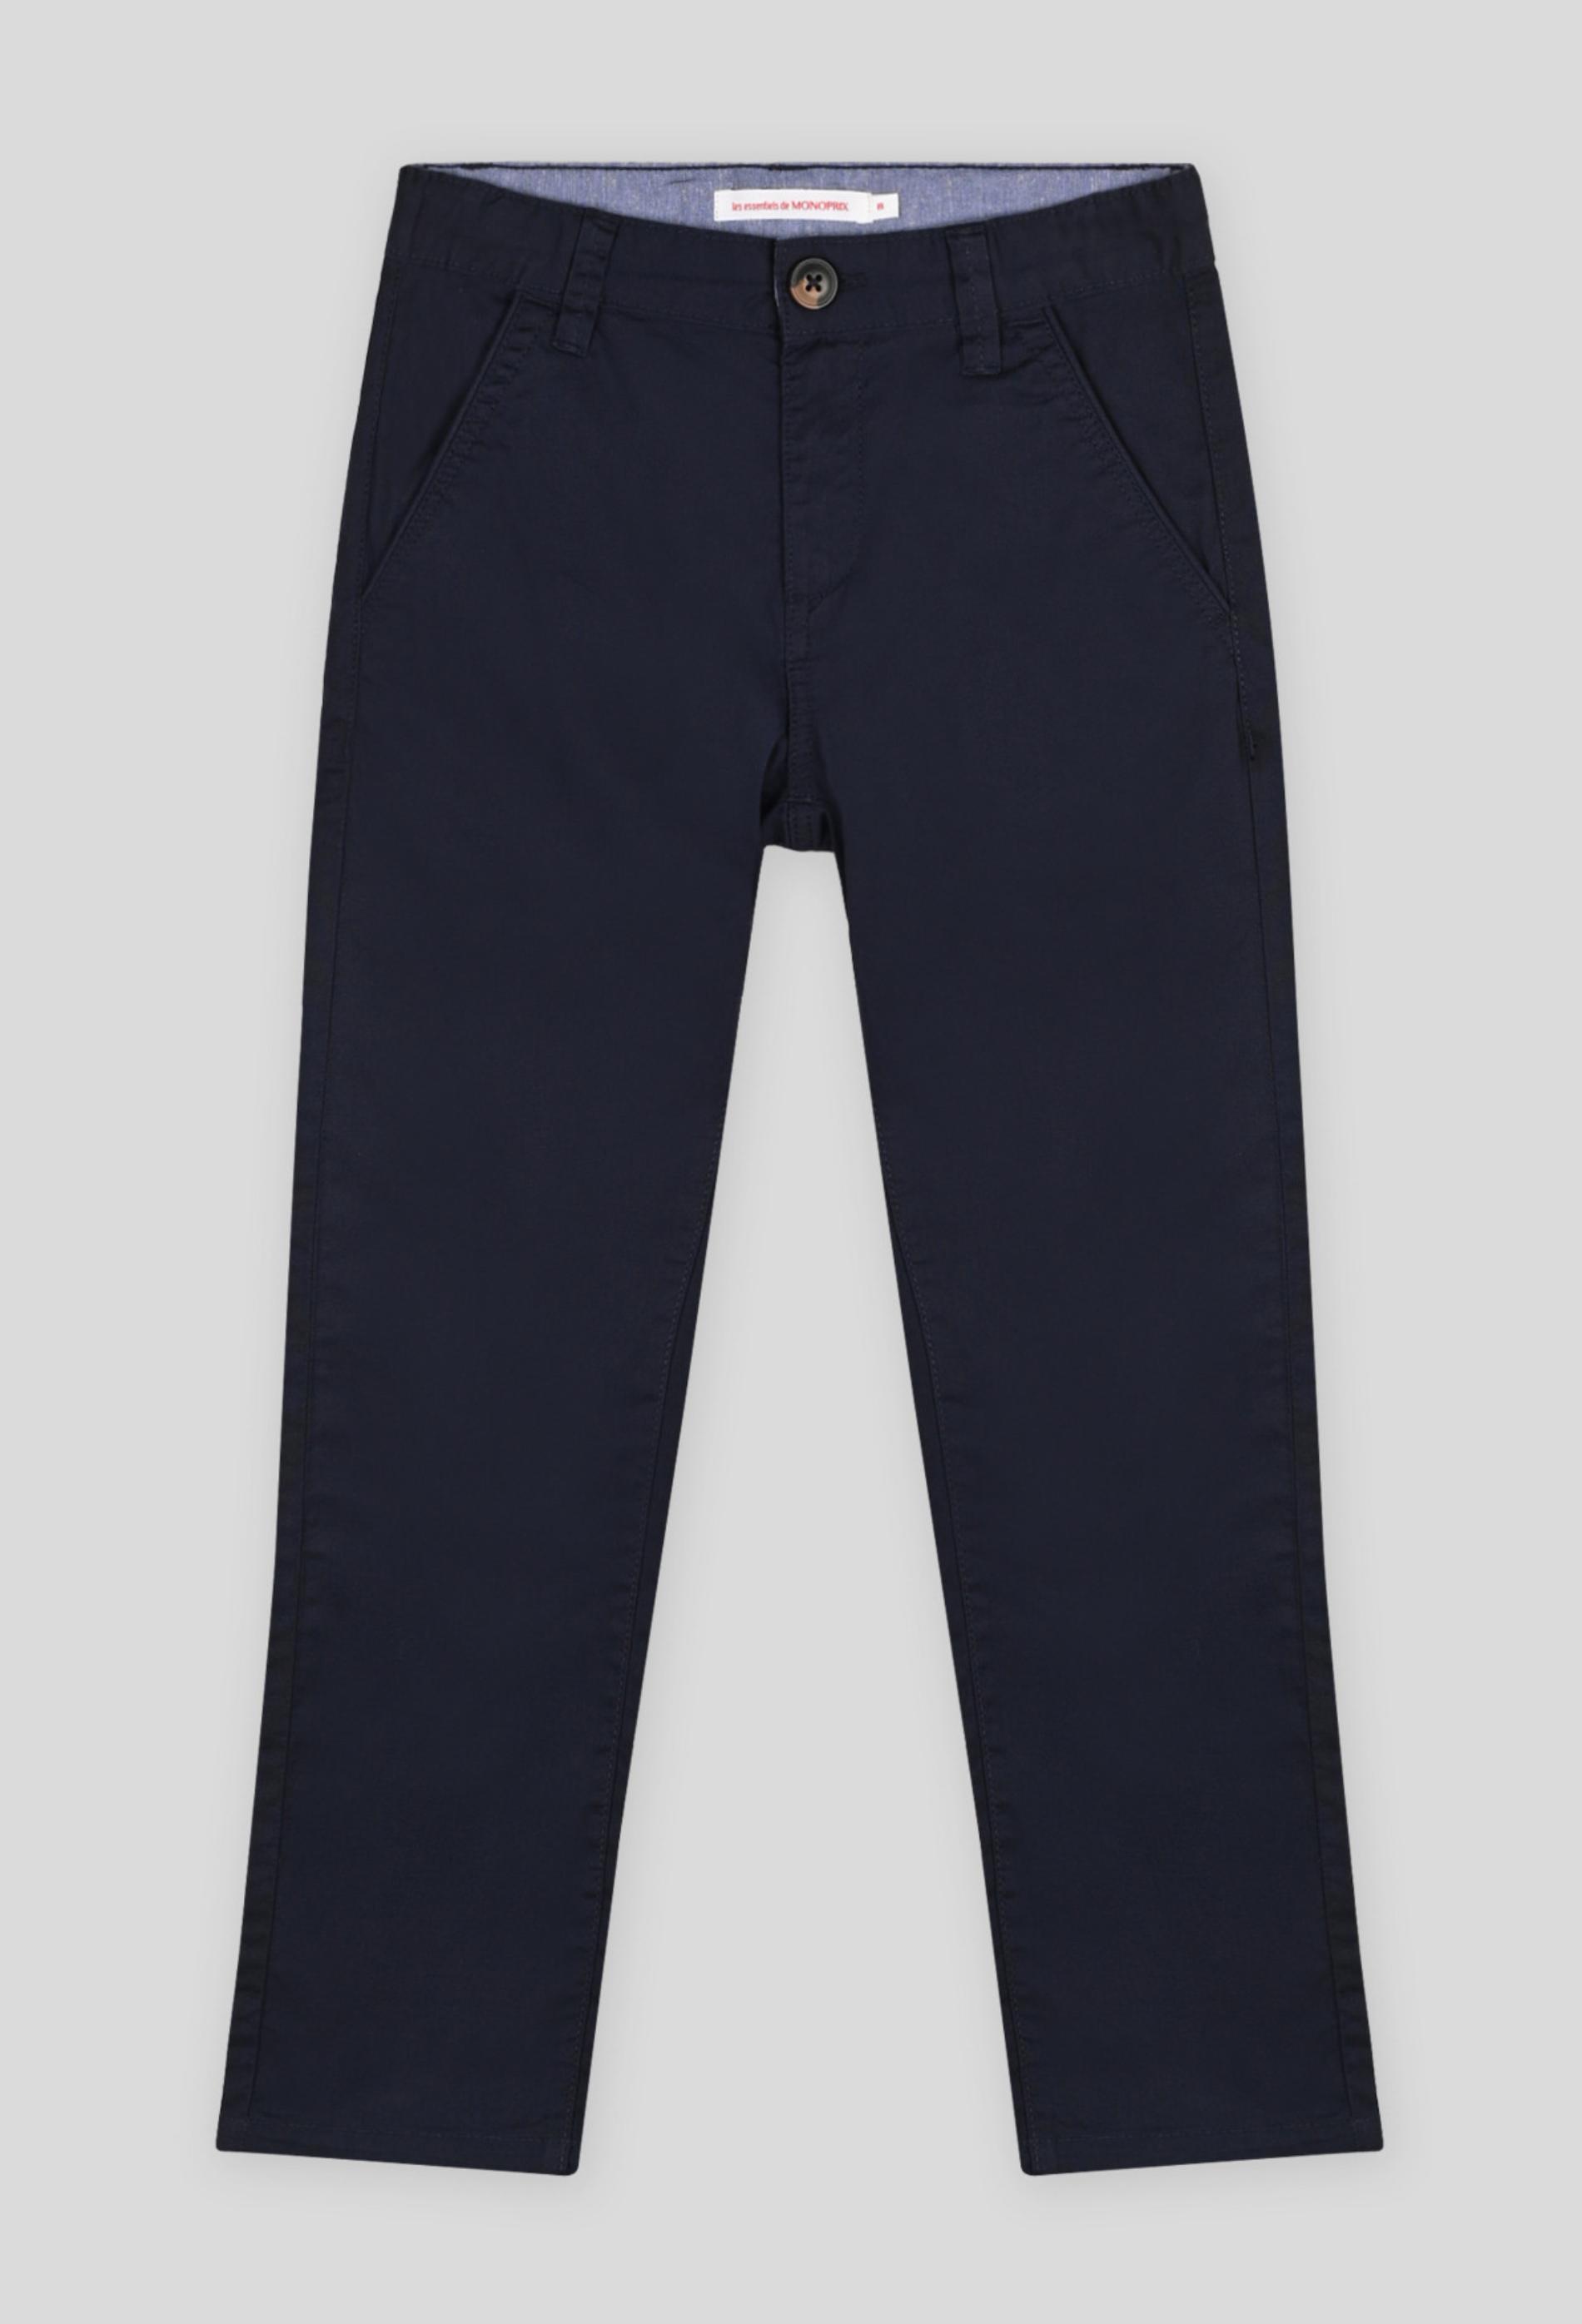 Pantalon léger en coton BIO 3 ans bleu foncé